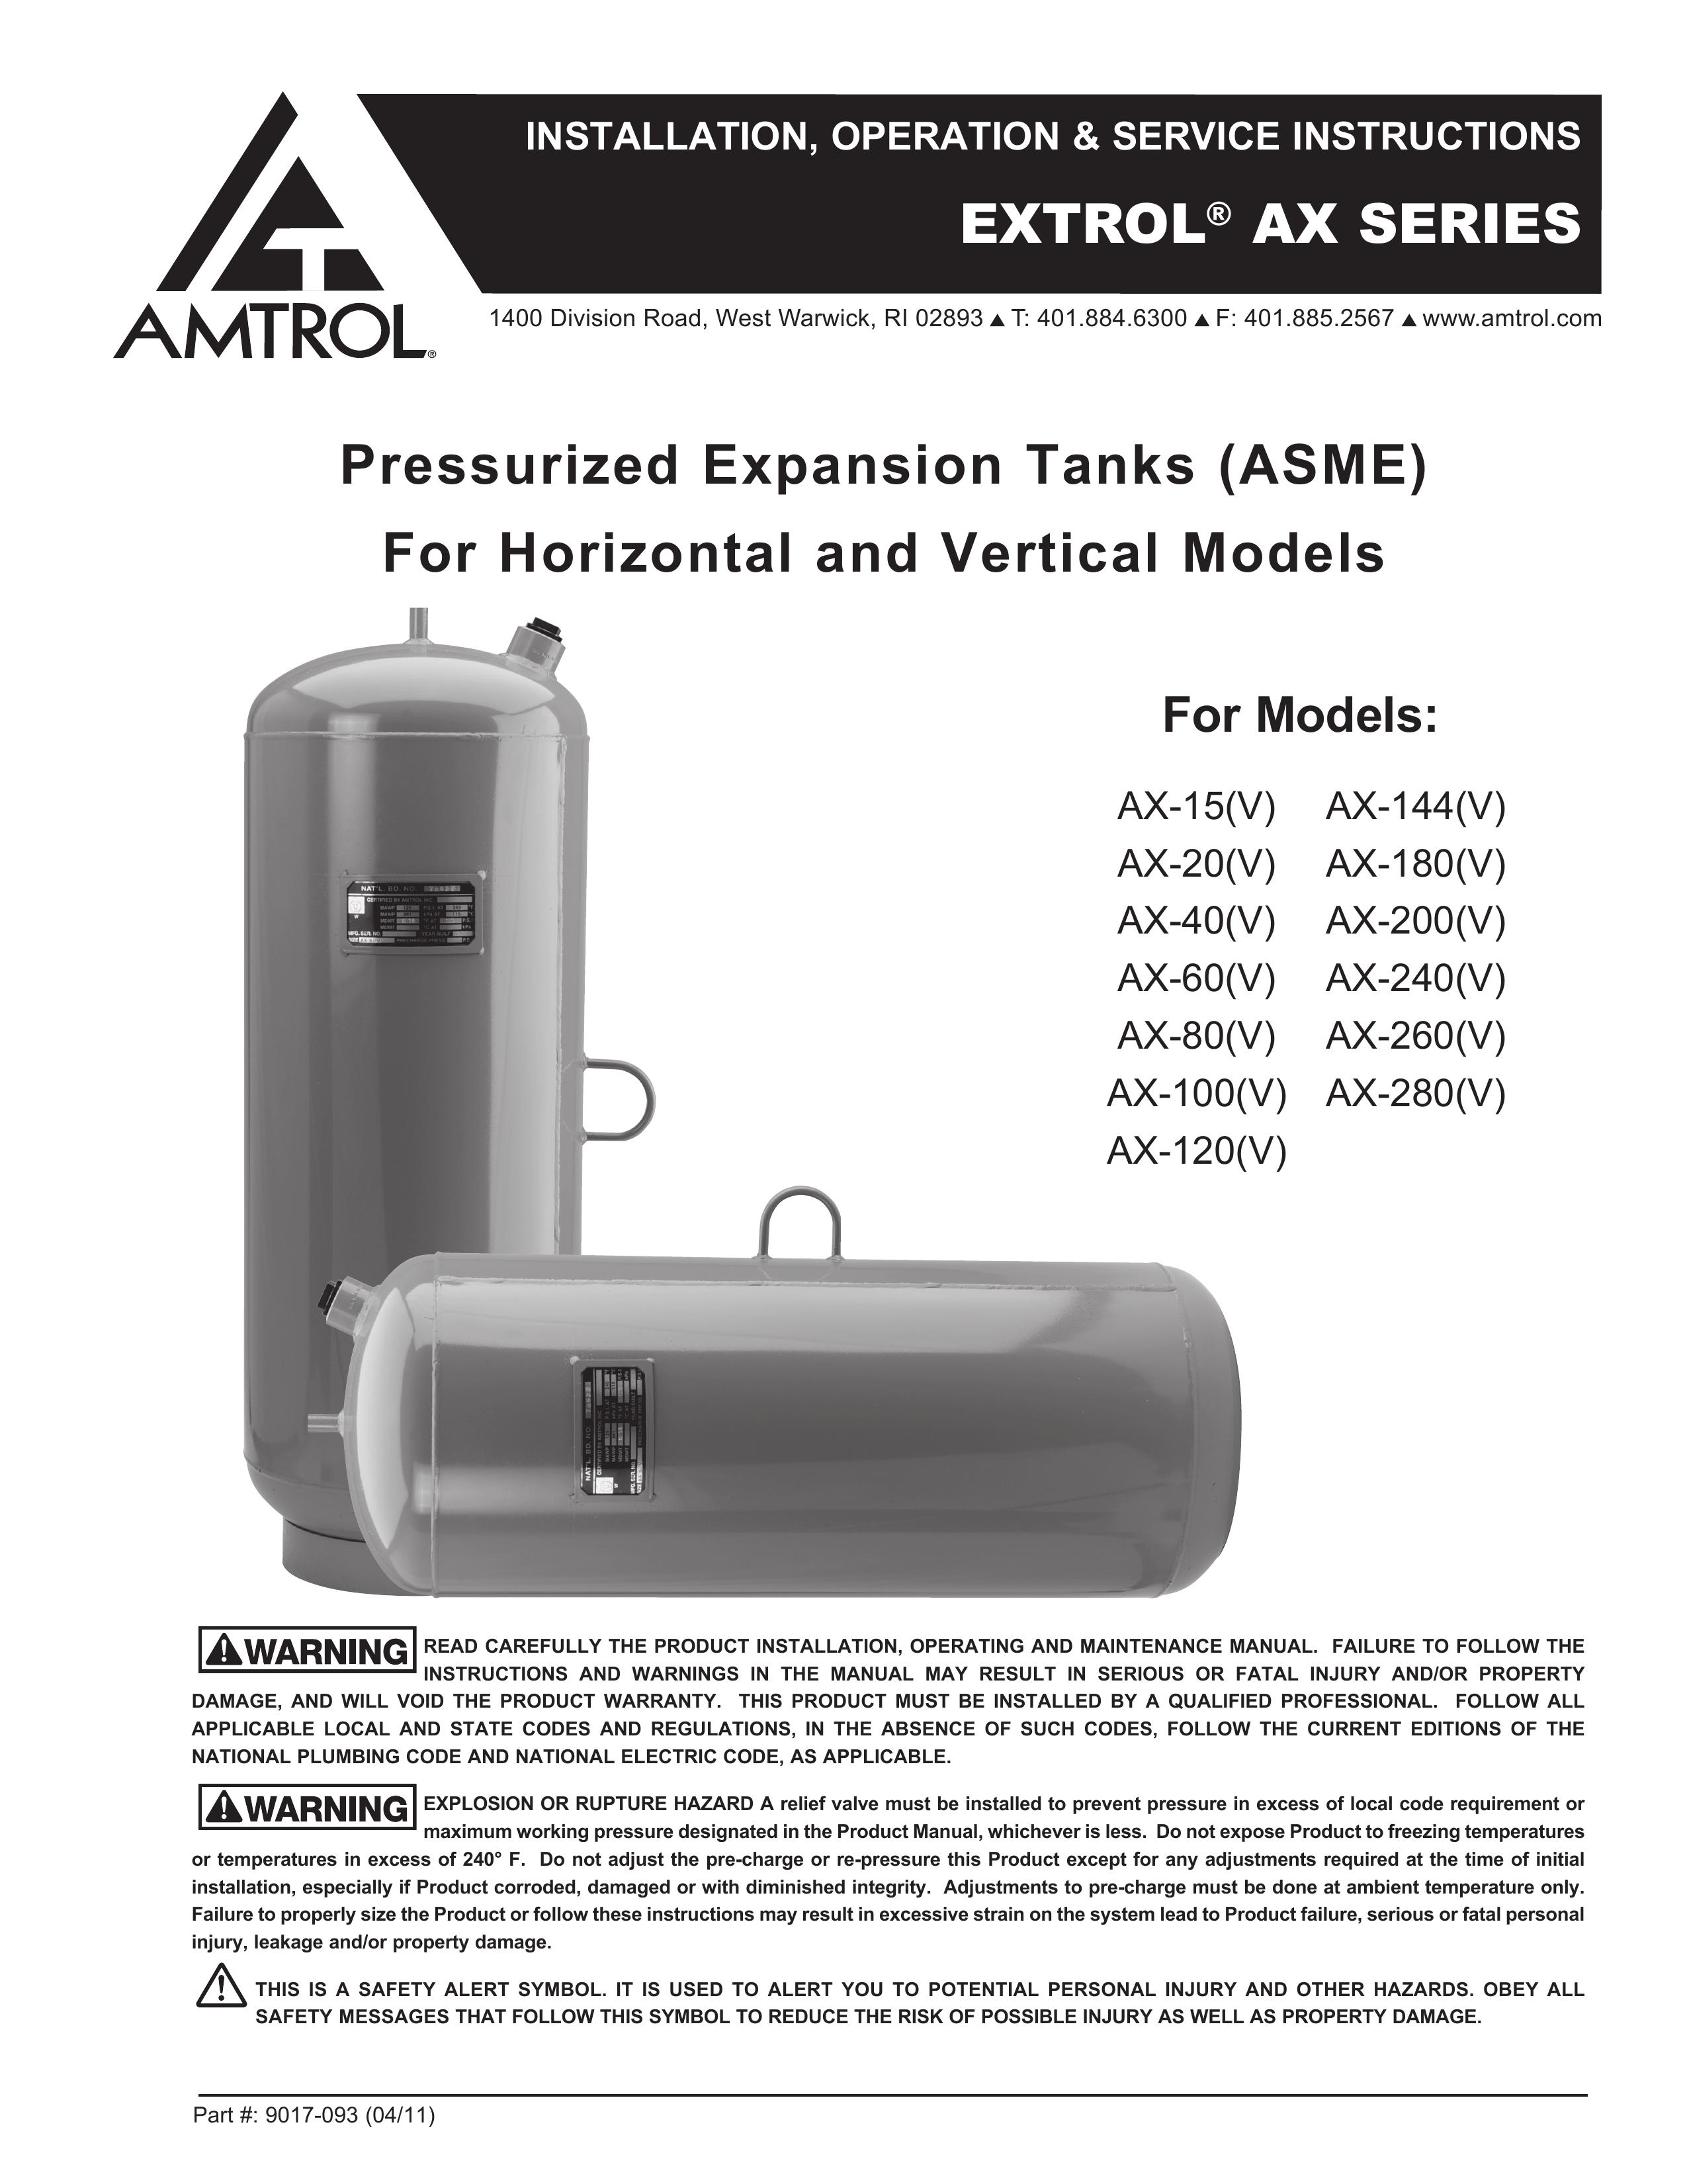 Amtrol AX-144(V) Oxygen Equipment User Manual